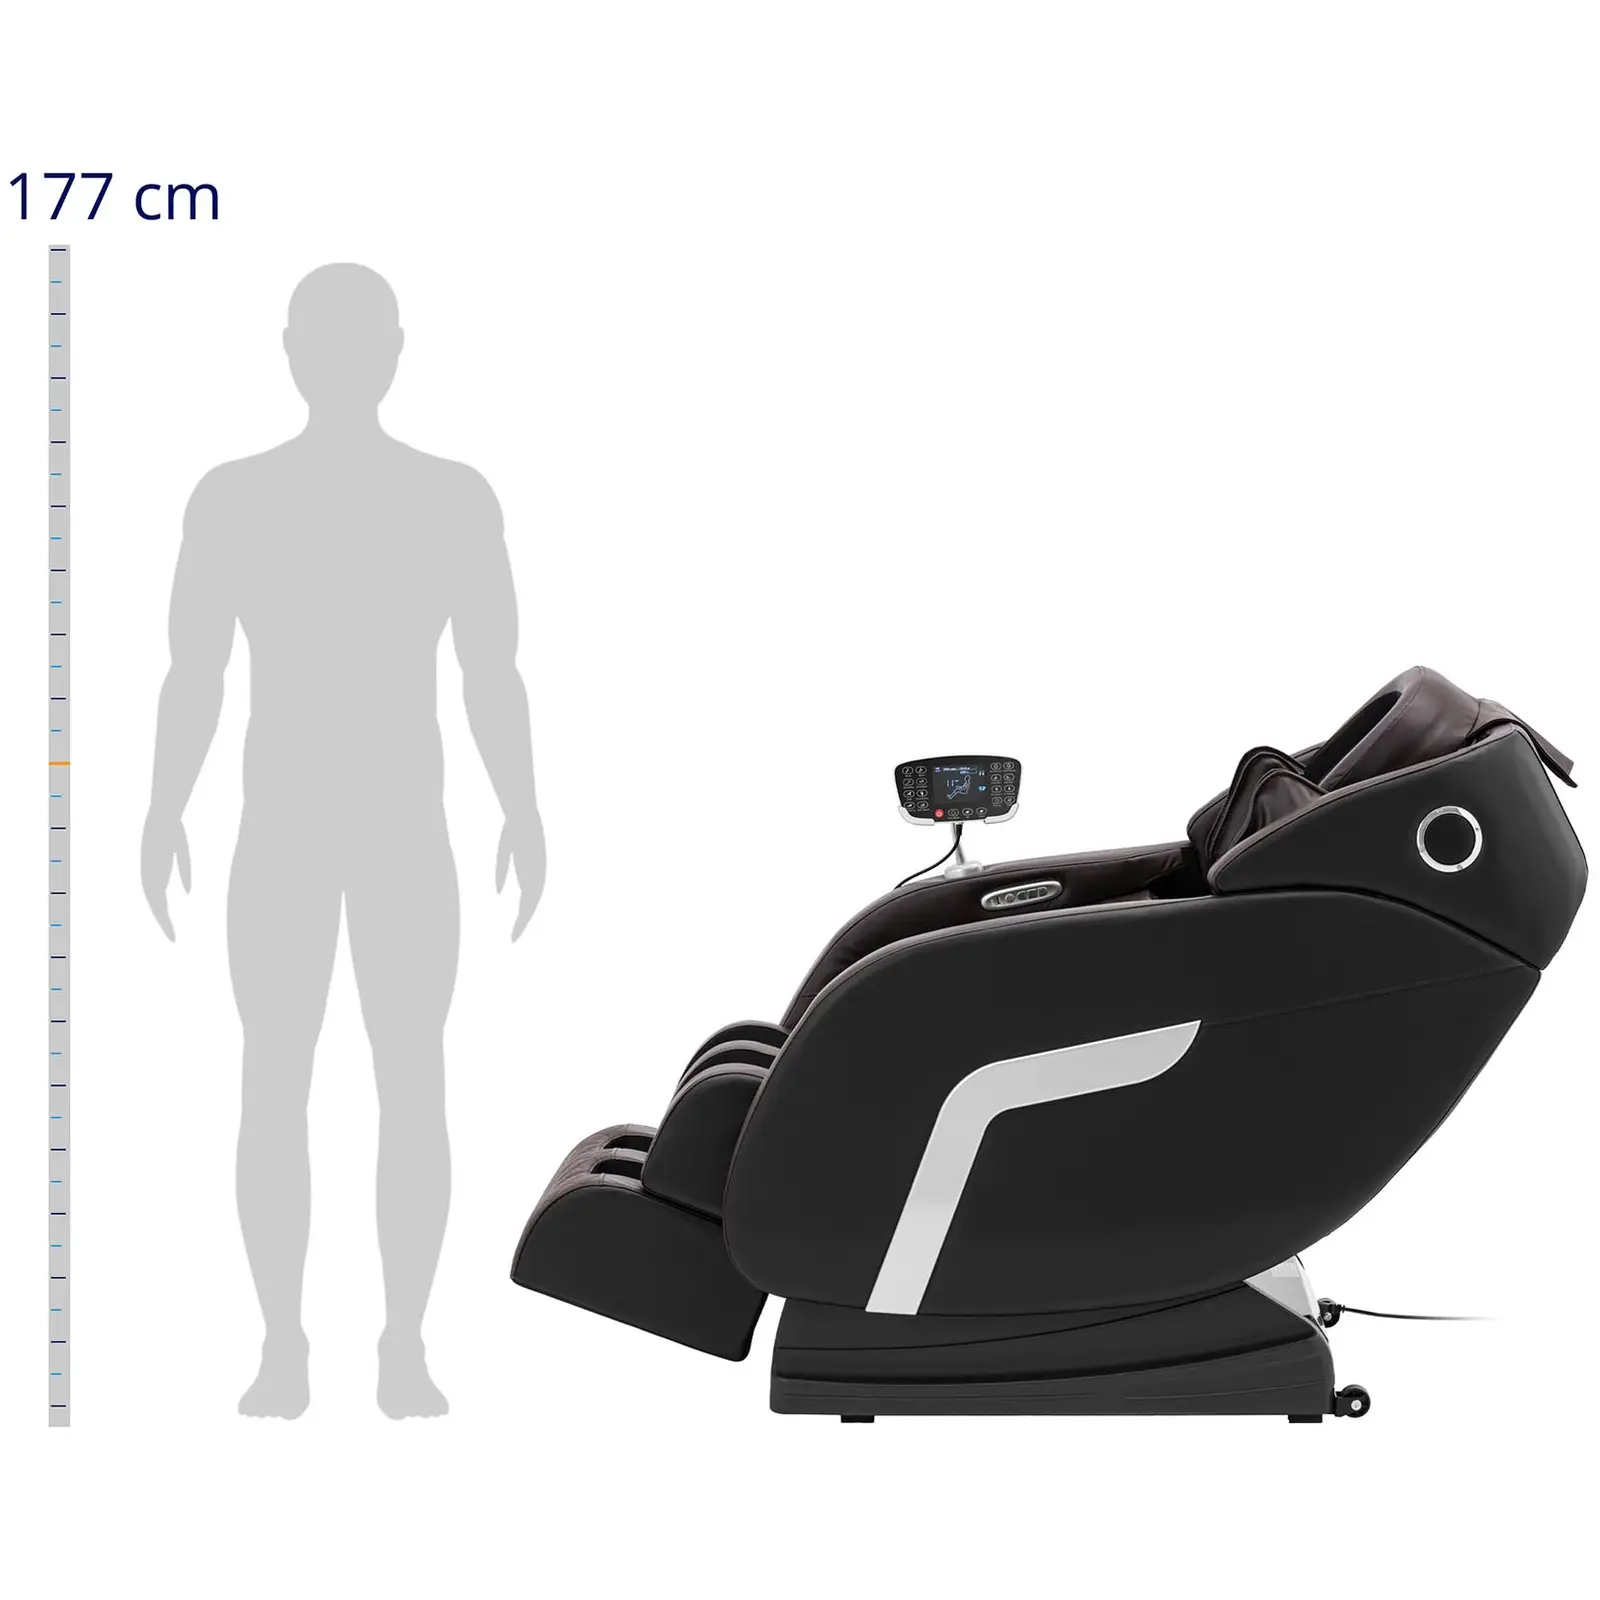 Cadeira de massagem - aquecida - posição Zero Gravity - 20 programas - preto e castanho